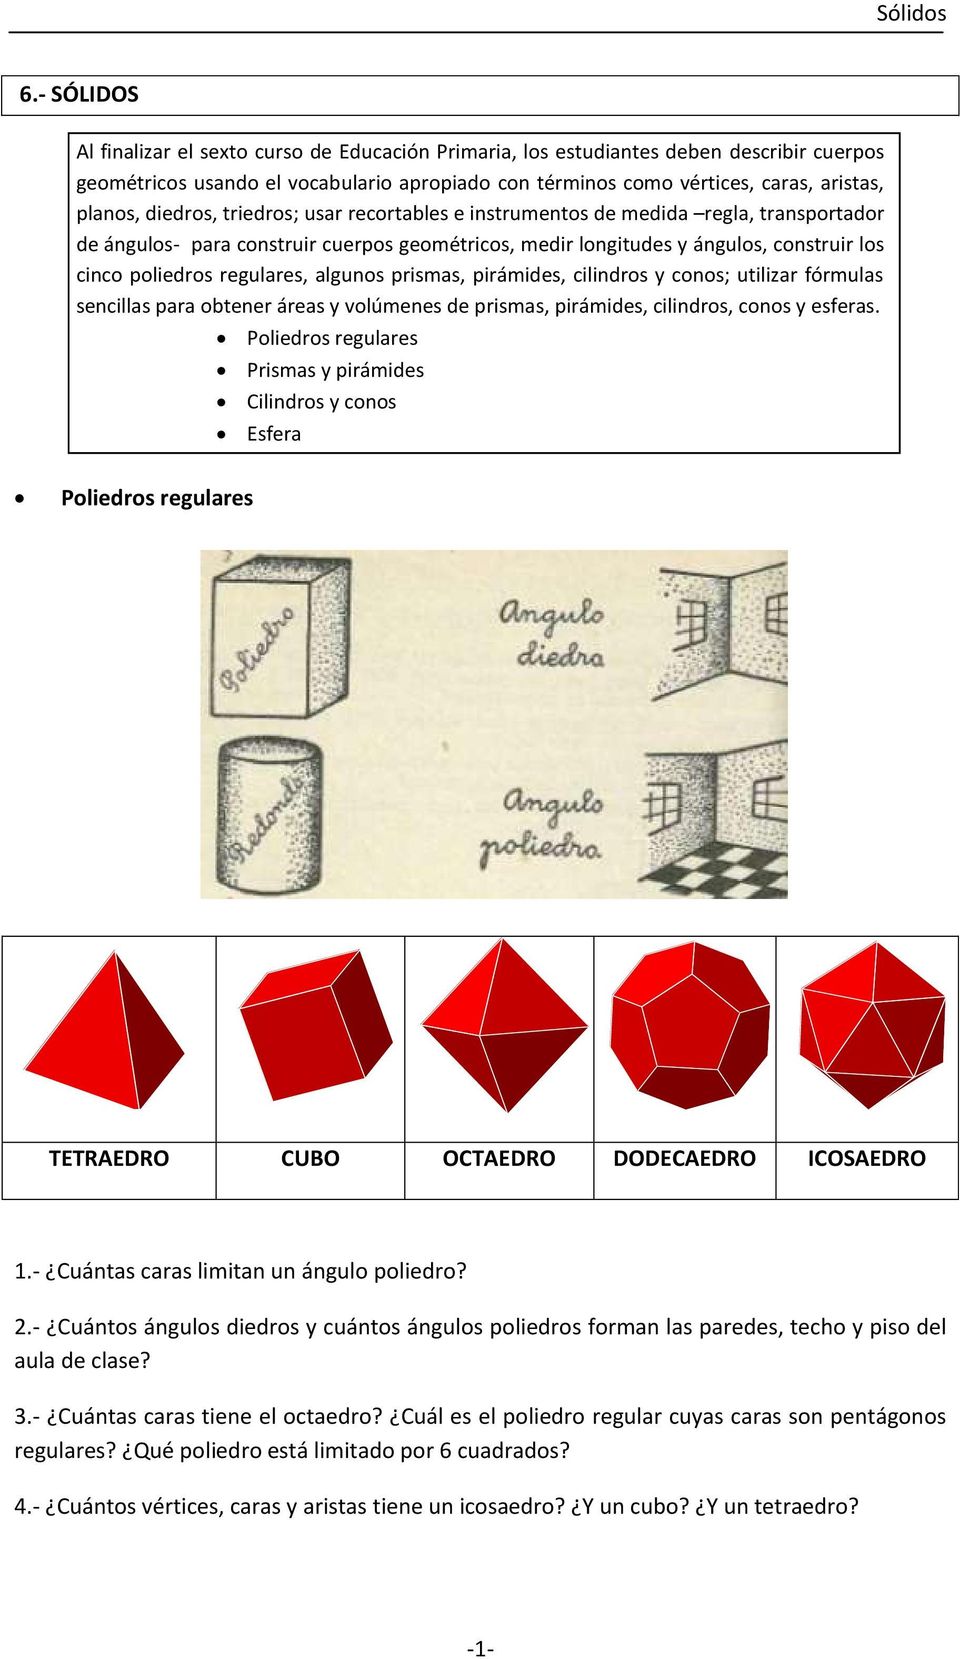 algunos prismas, pirámides, cilindros y conos; utilizar fórmulas sencillas para obtener áreas y volúmenes de prismas, pirámides, cilindros, conos y esferas.